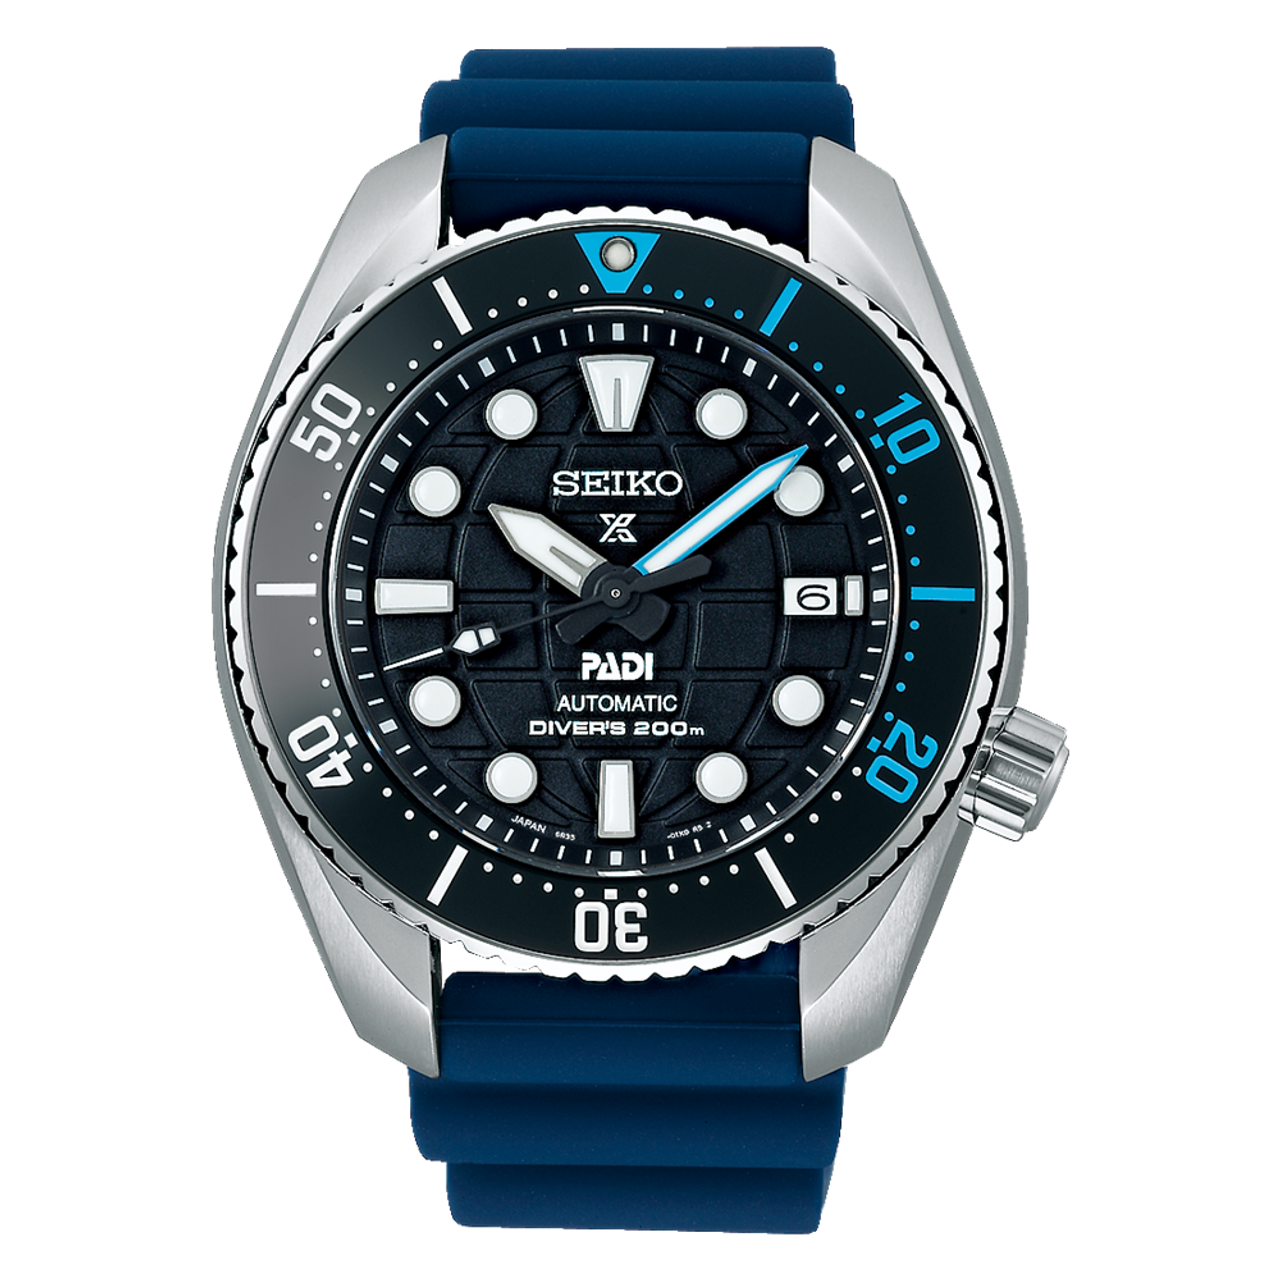 The Seiko PADI Sumo SPB325 Prospex Dive Watch